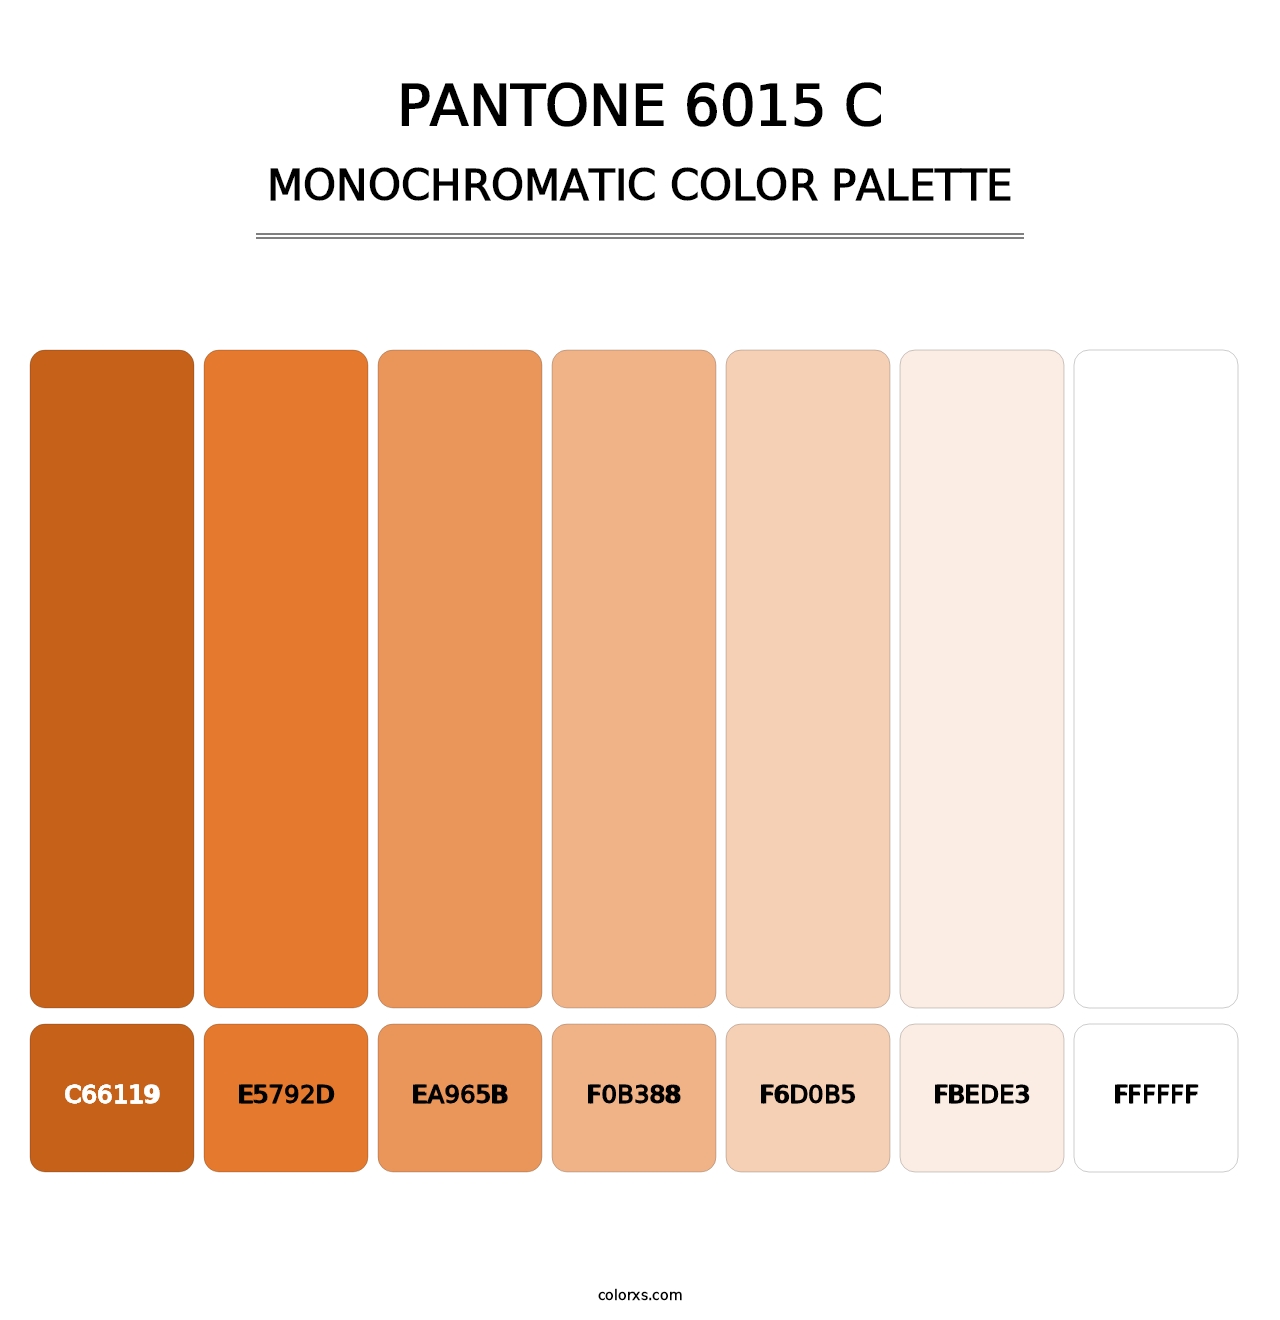 PANTONE 6015 C - Monochromatic Color Palette